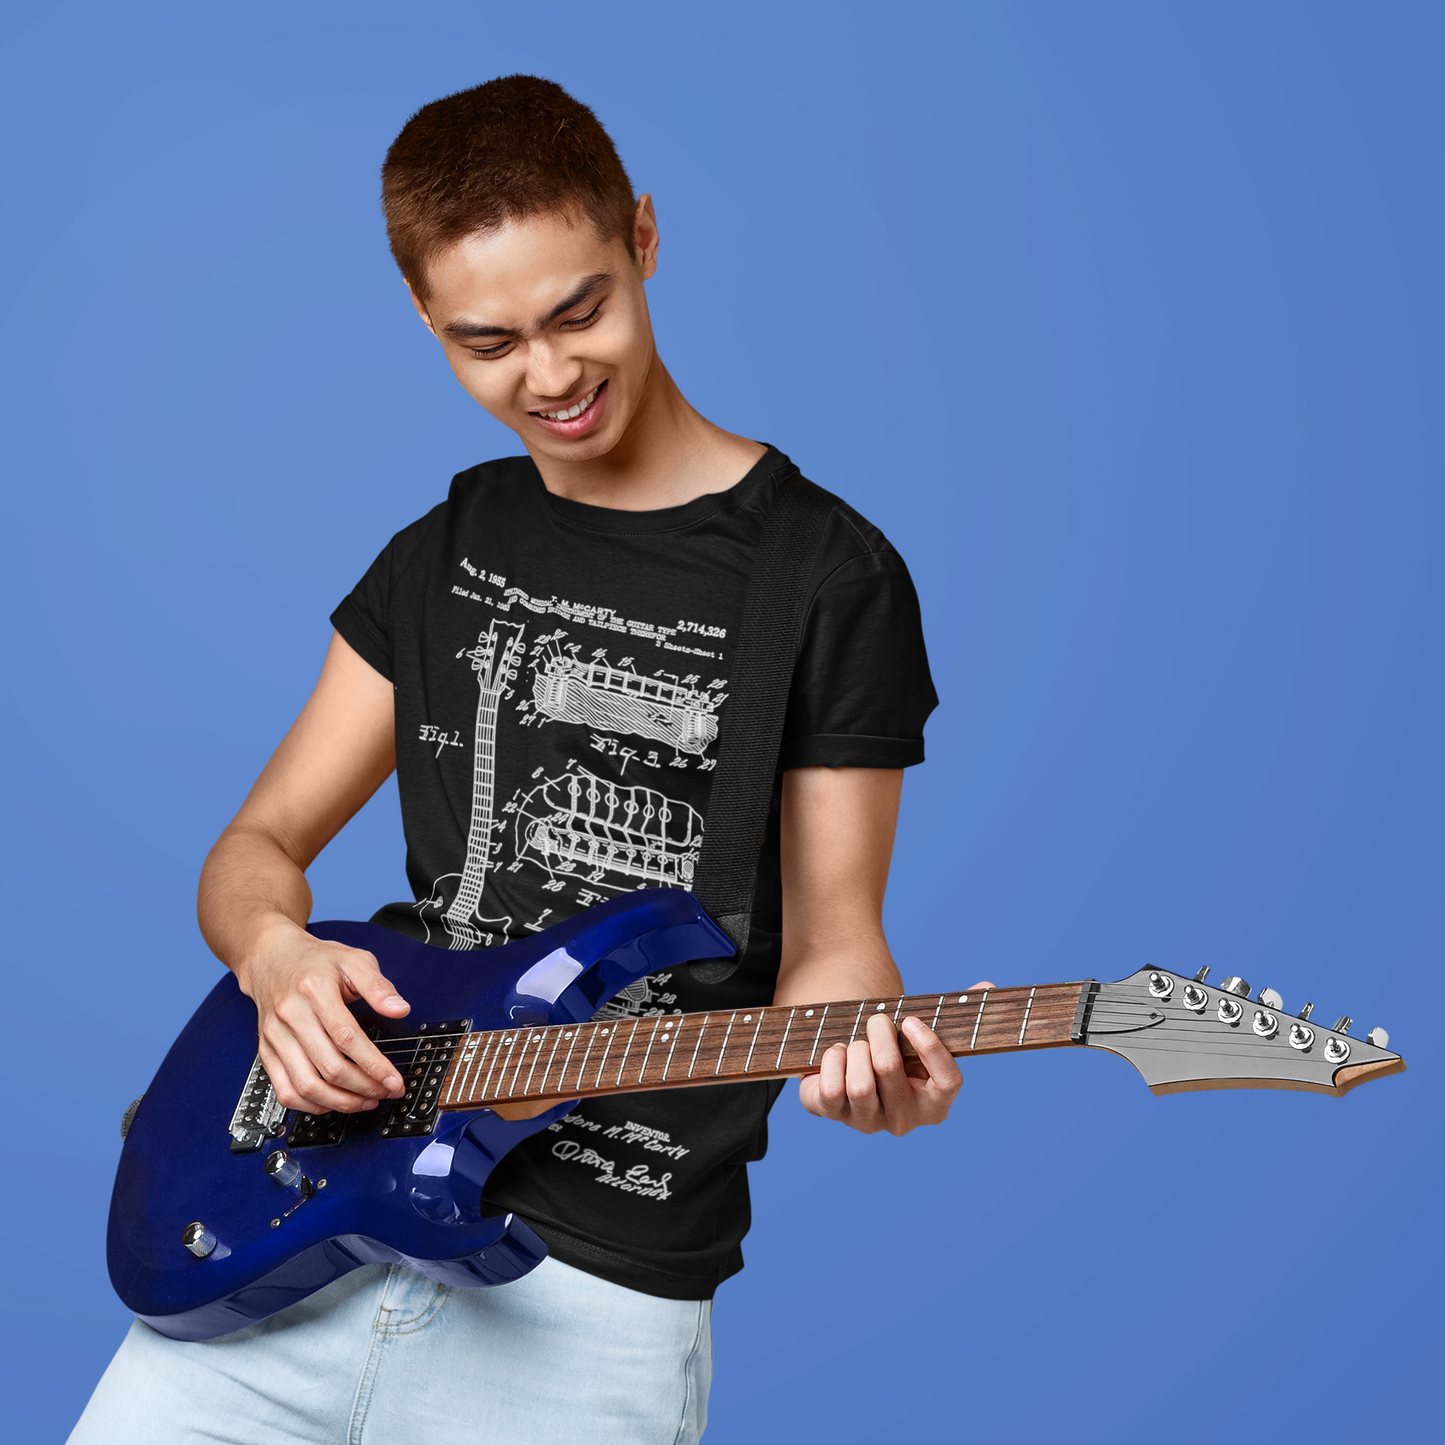 Guitar player wearing guitar blueprint t-shirt